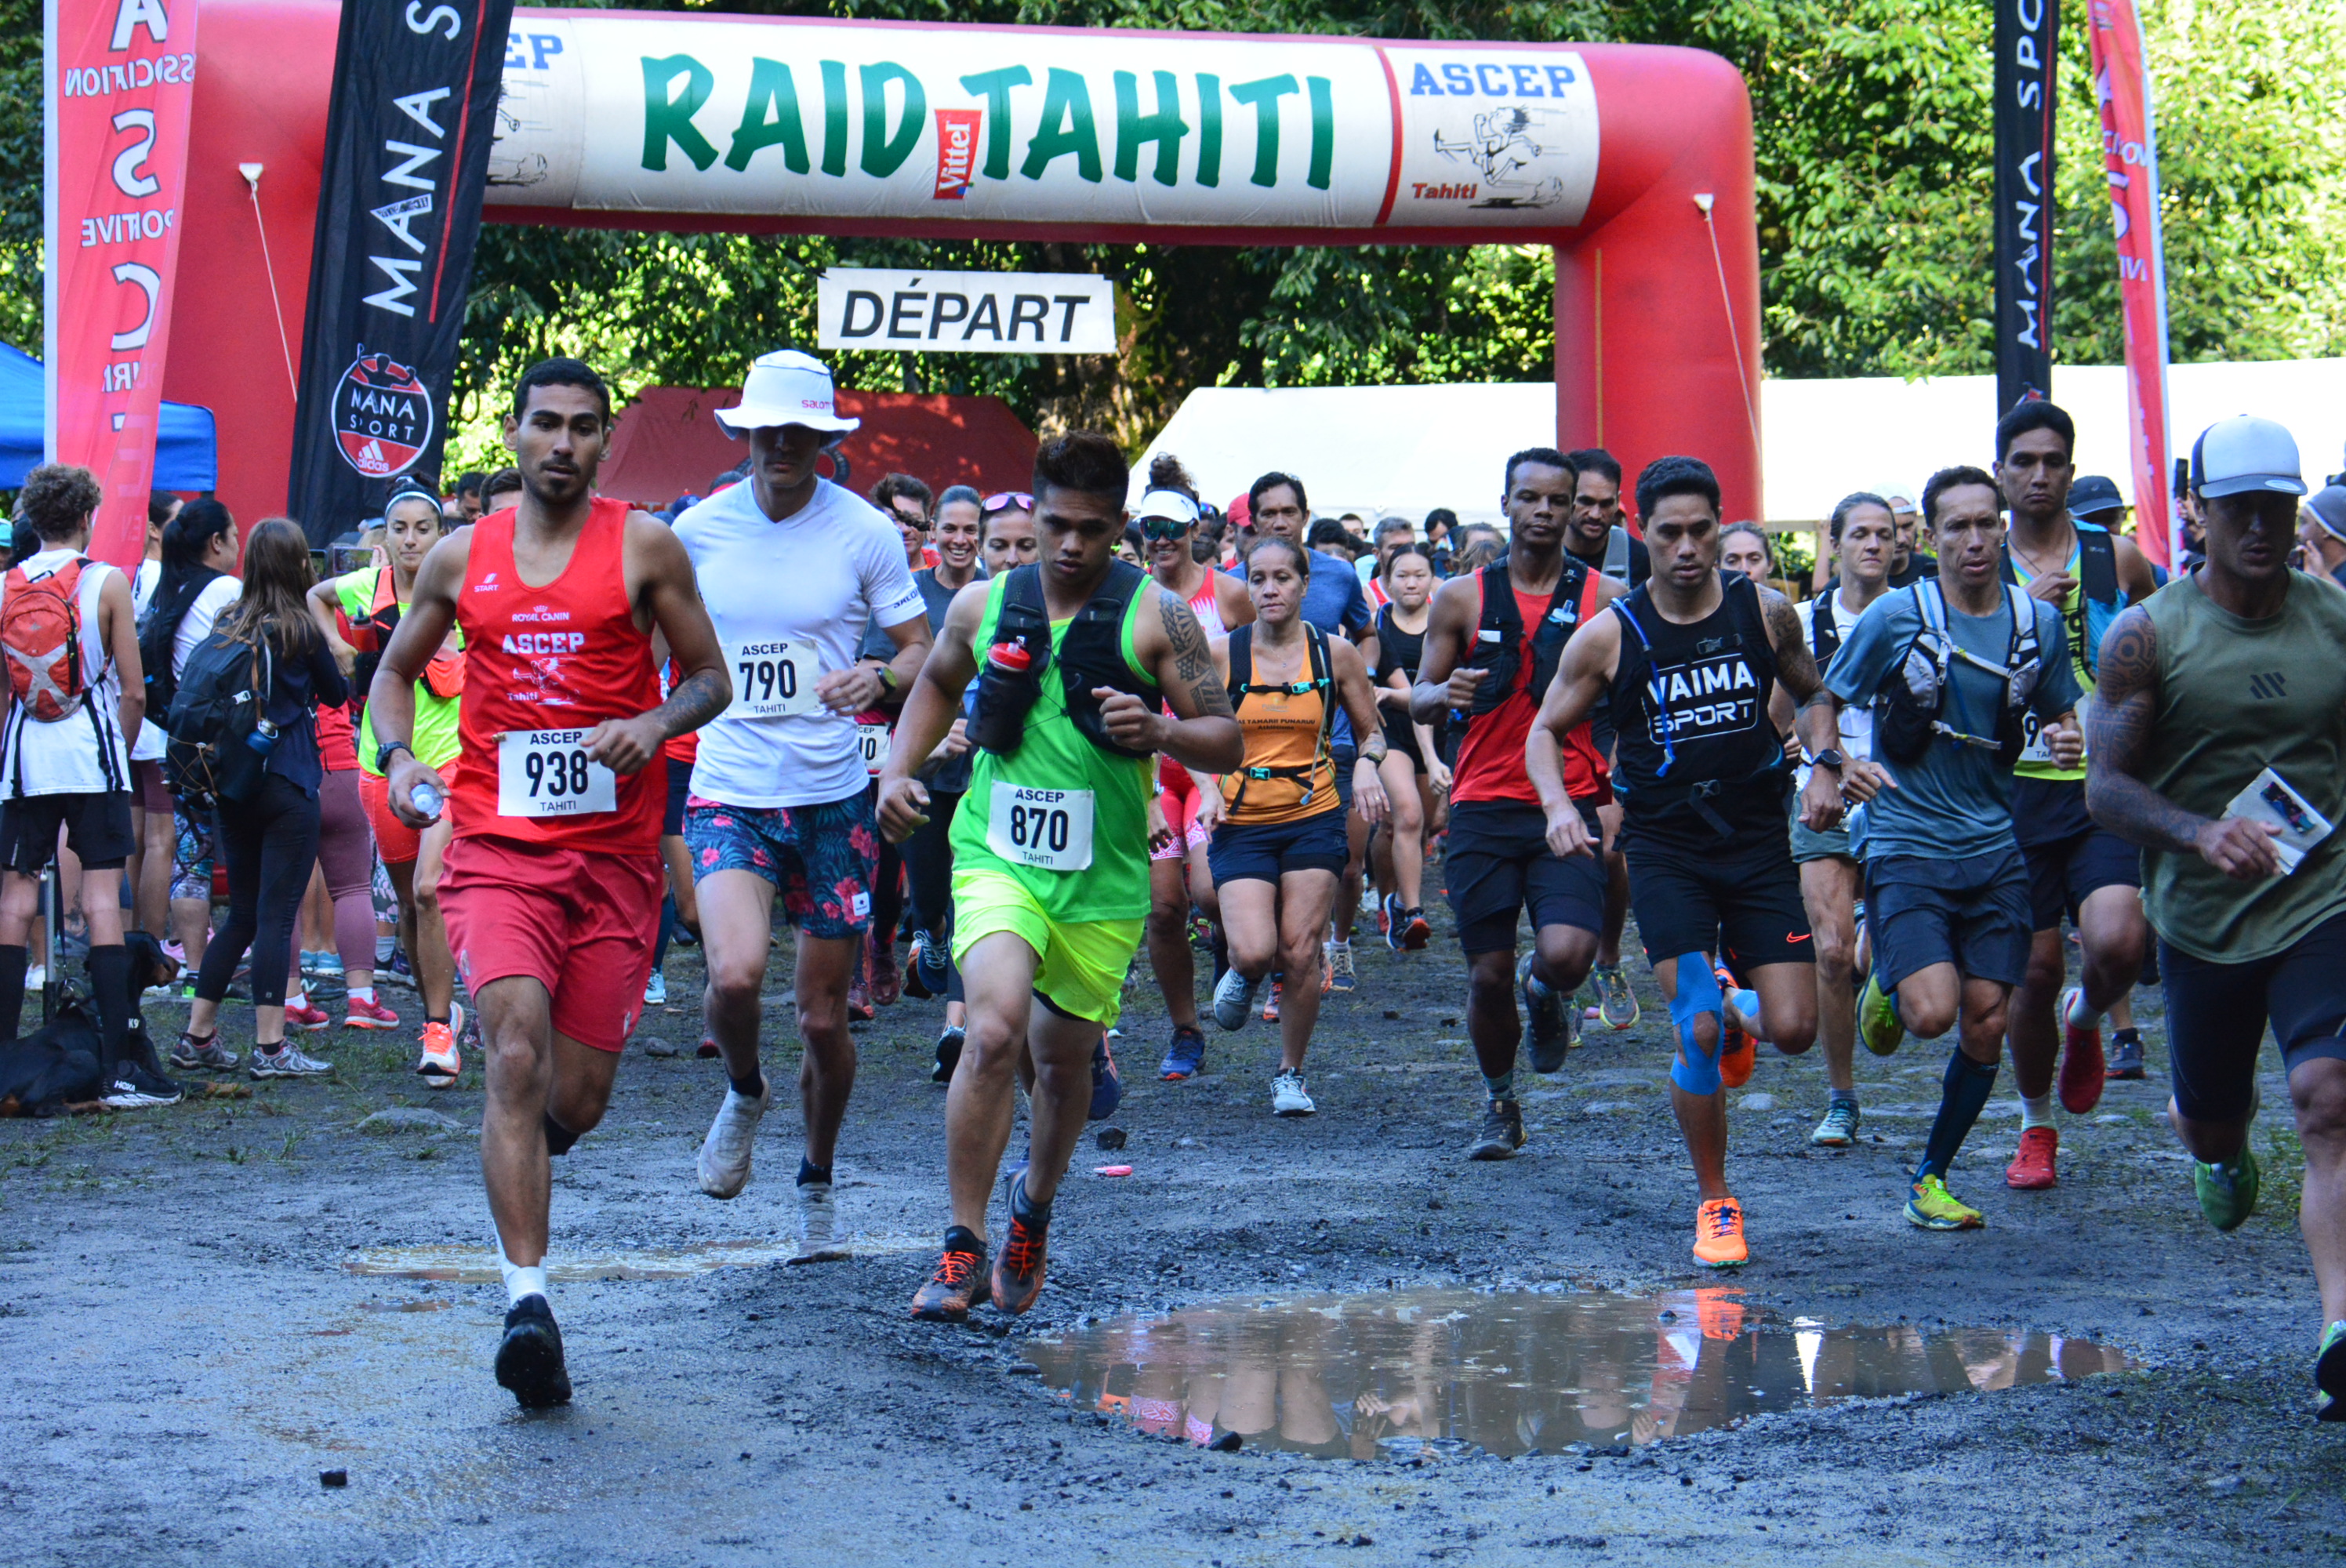 Près de 300 coureurs se sont donnés rendez-vous dimanche dans la vallée de Papeno'o pour prendre aux courses de la 17e édition du Raid Vittel.